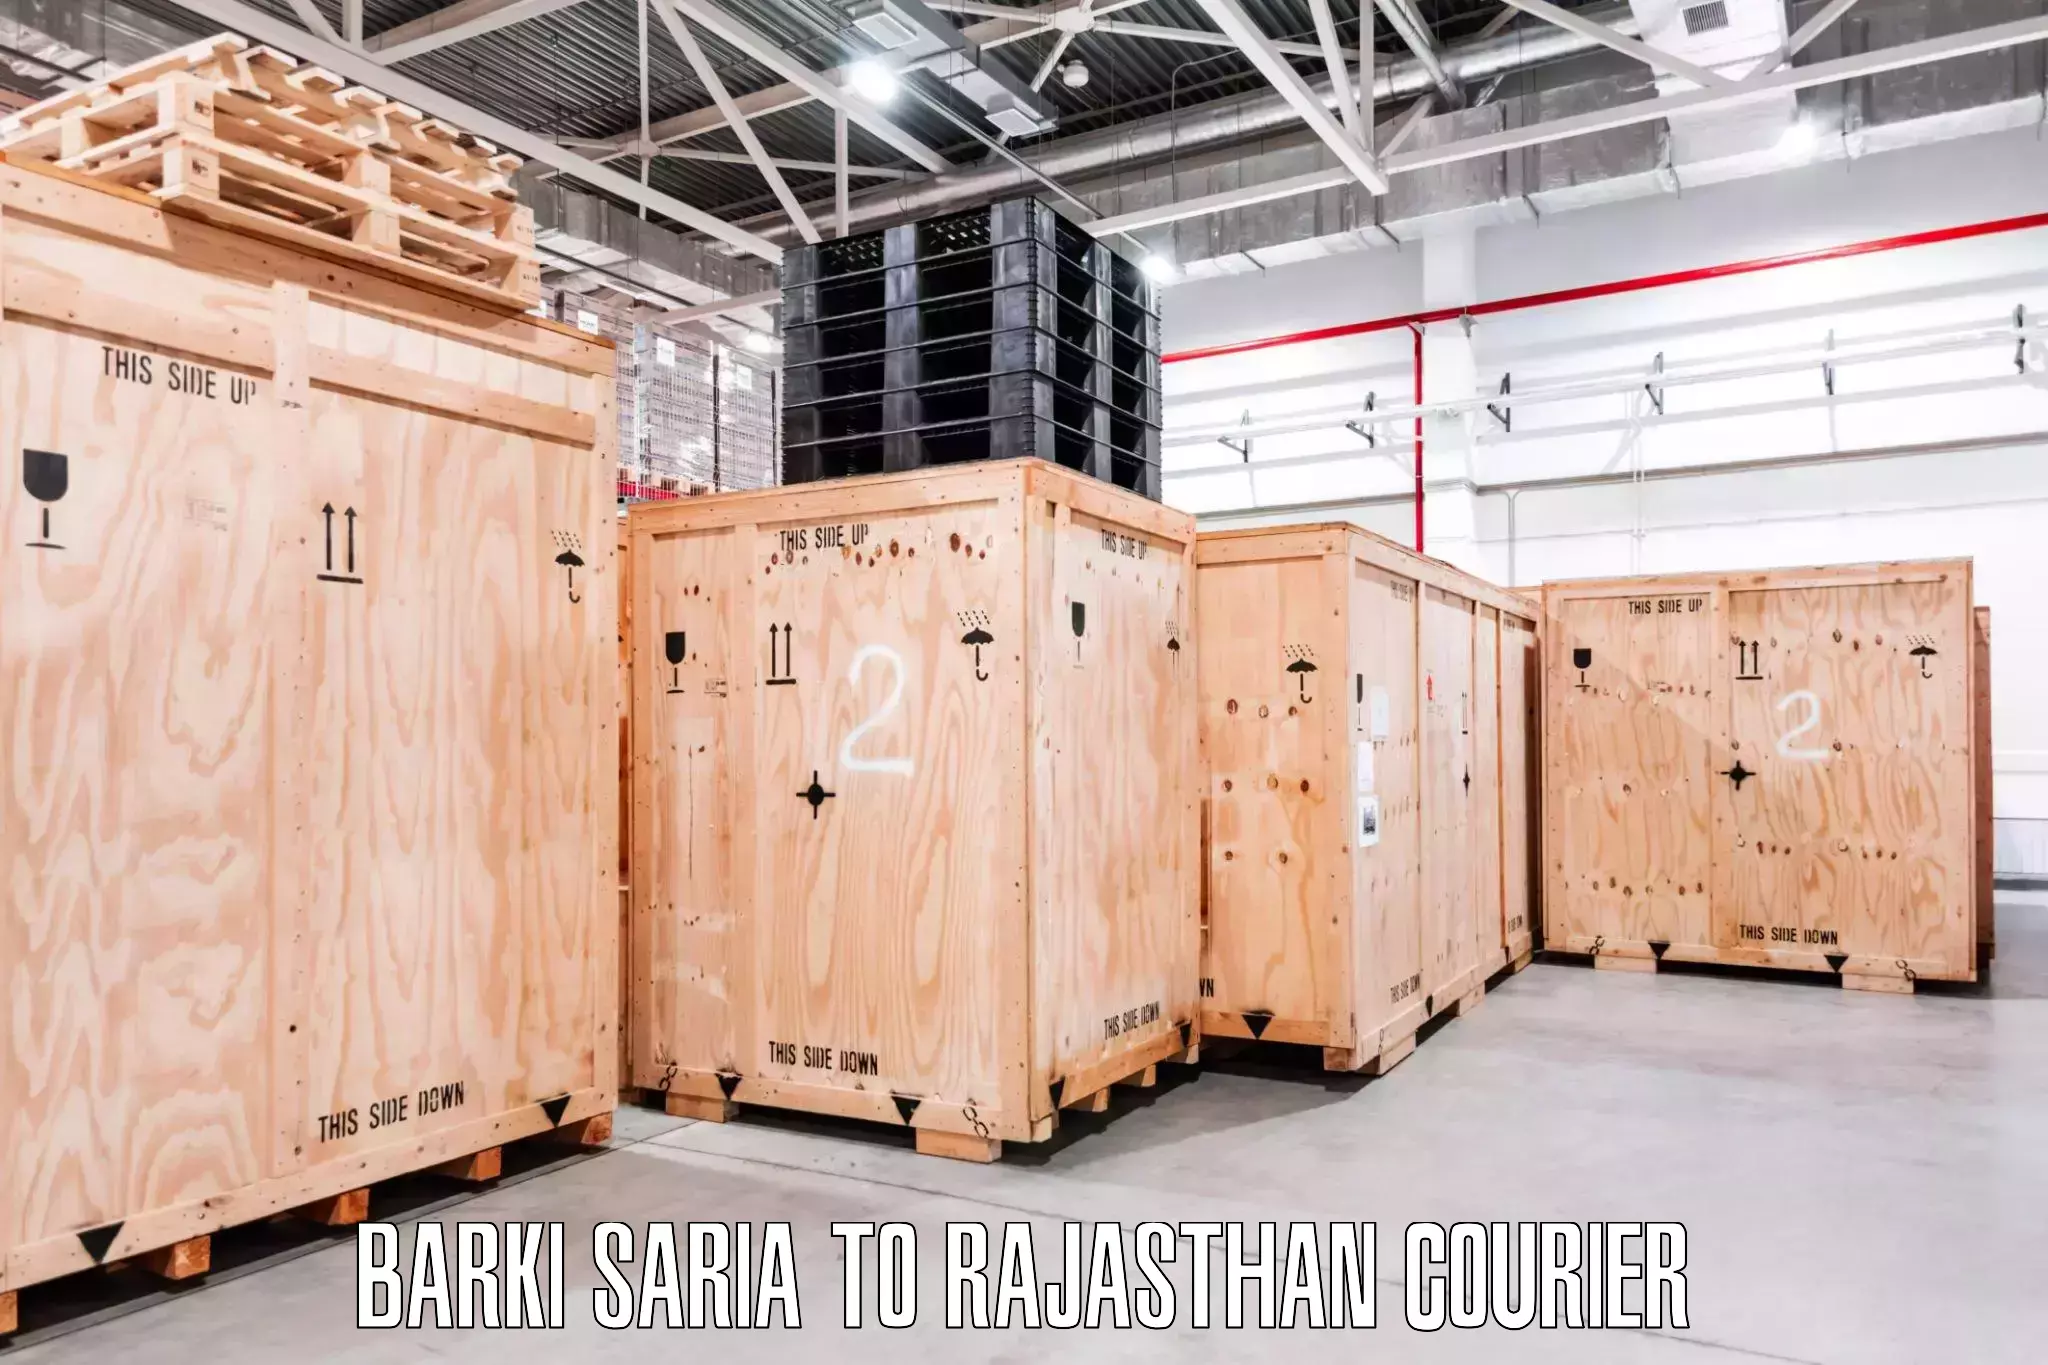 Local furniture movers Barki Saria to IIT Jodhpur